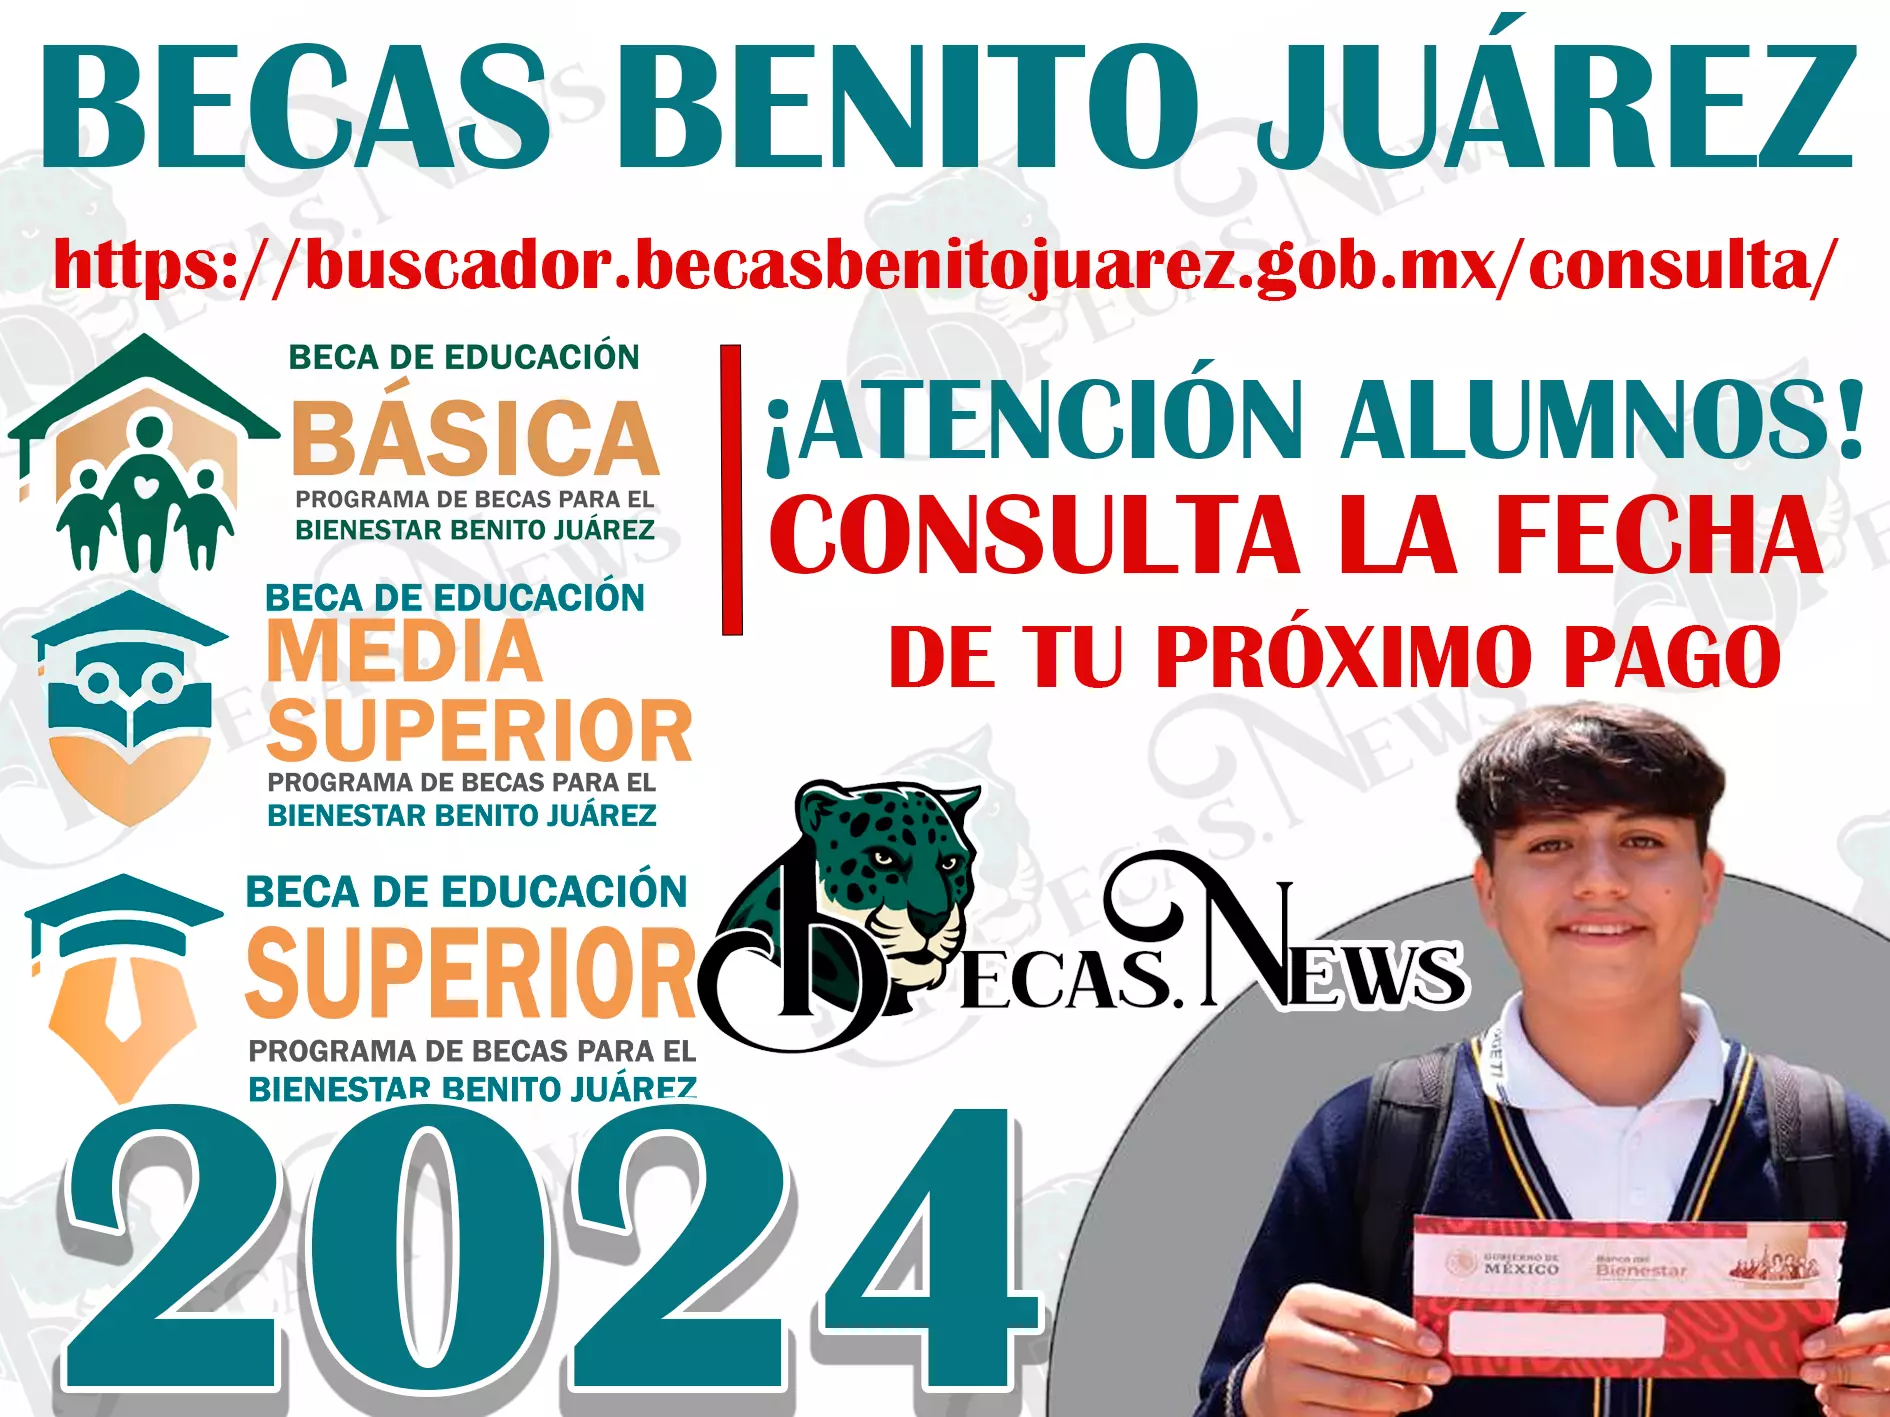 ¡Atención alumnos! Esta es la fecha del próximo pago de la Beca Benito Juárez